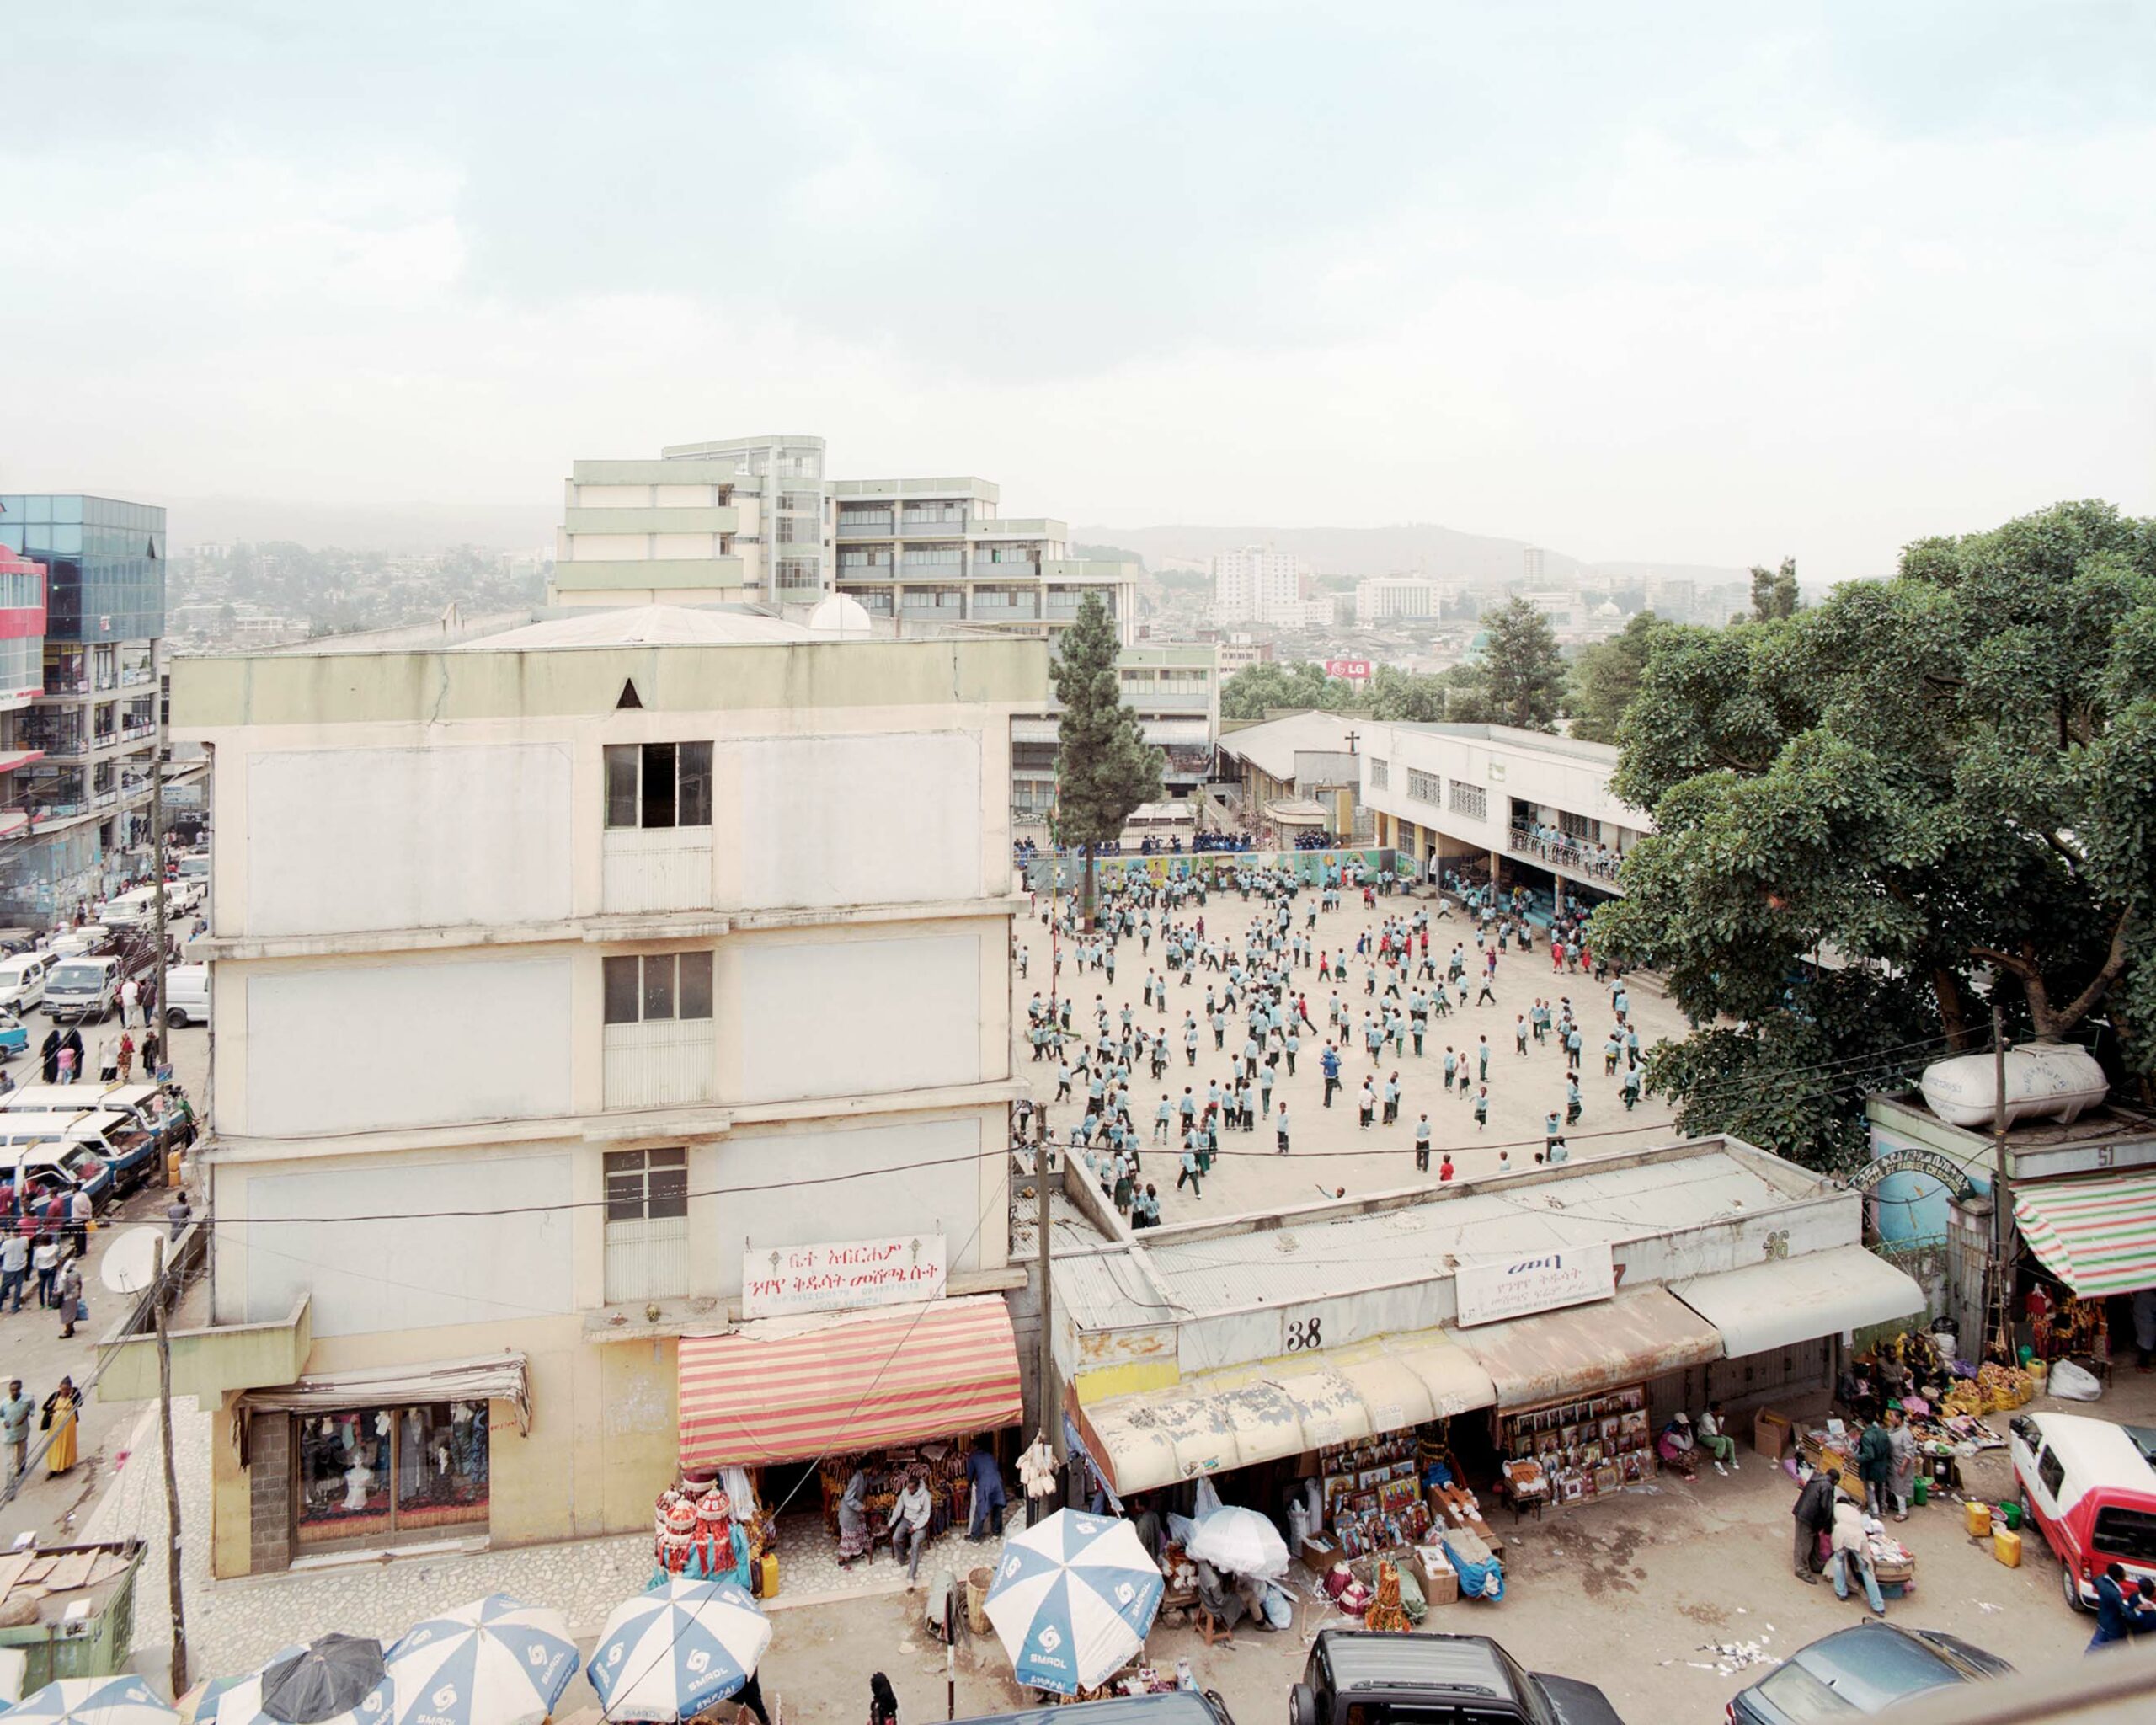 Addis Ababa. The Awakening City